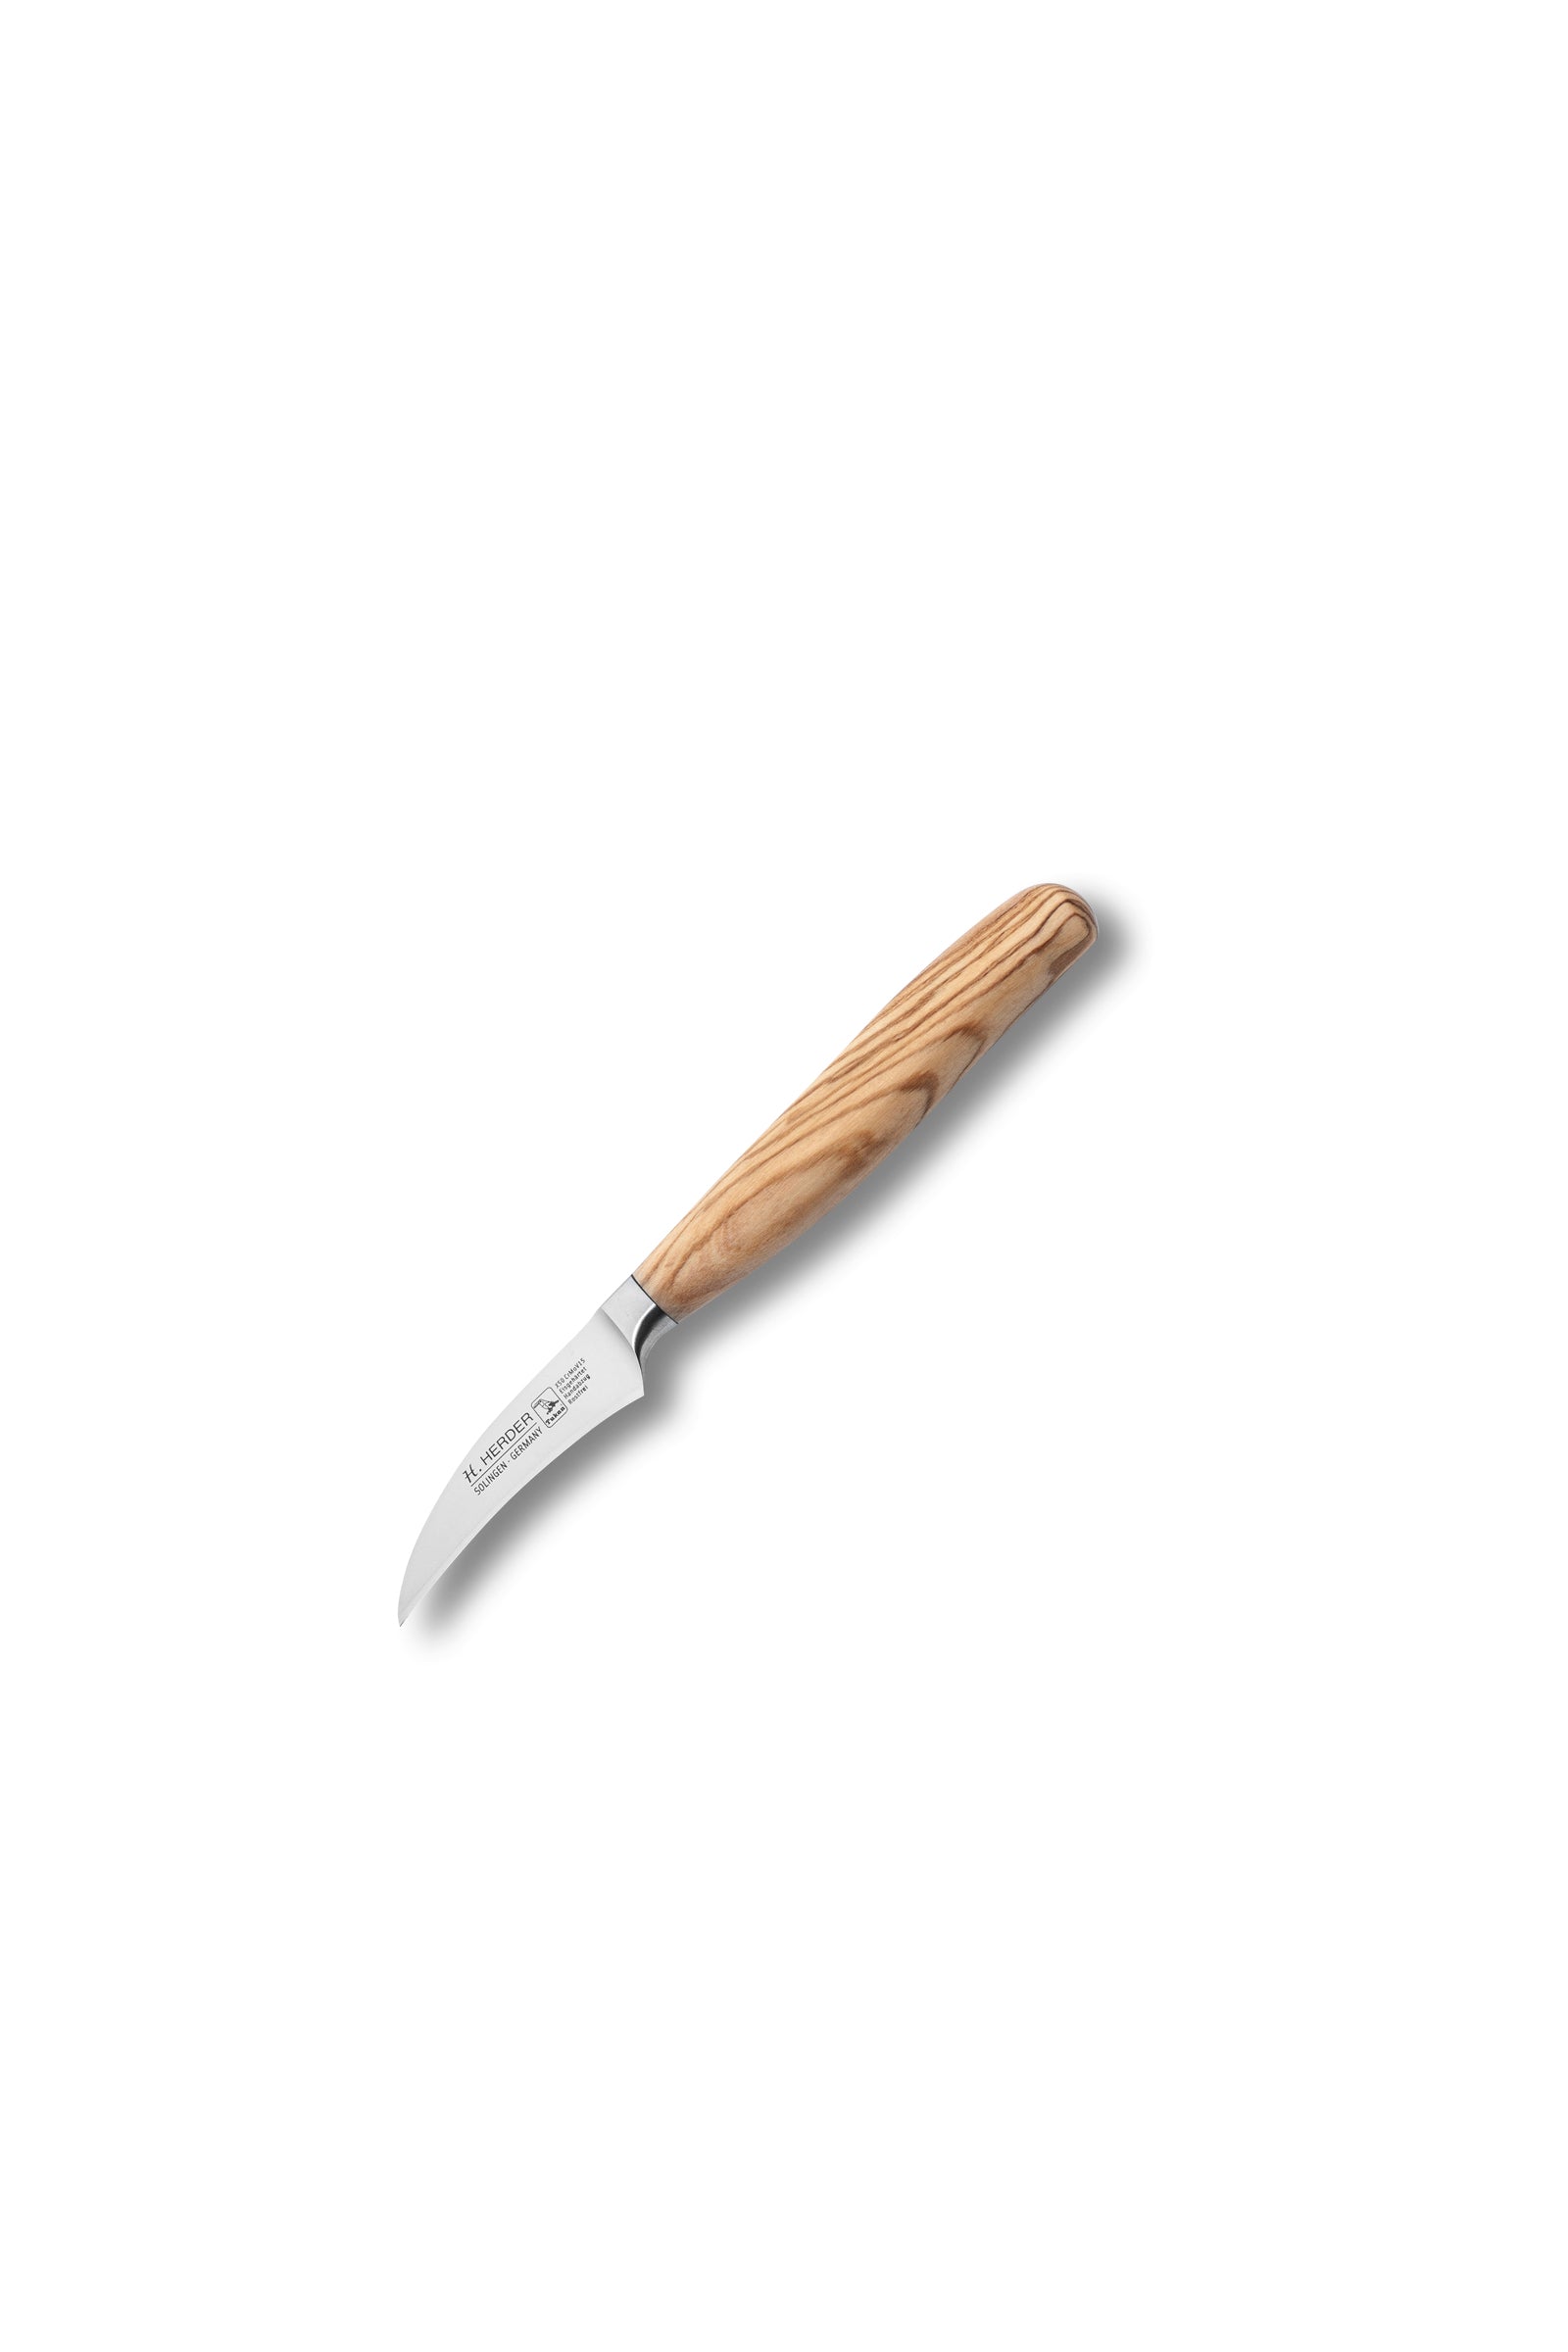 Cuchillo Eterno, madera de olivo, longitud de la hoja 7cm, forjado, curvado